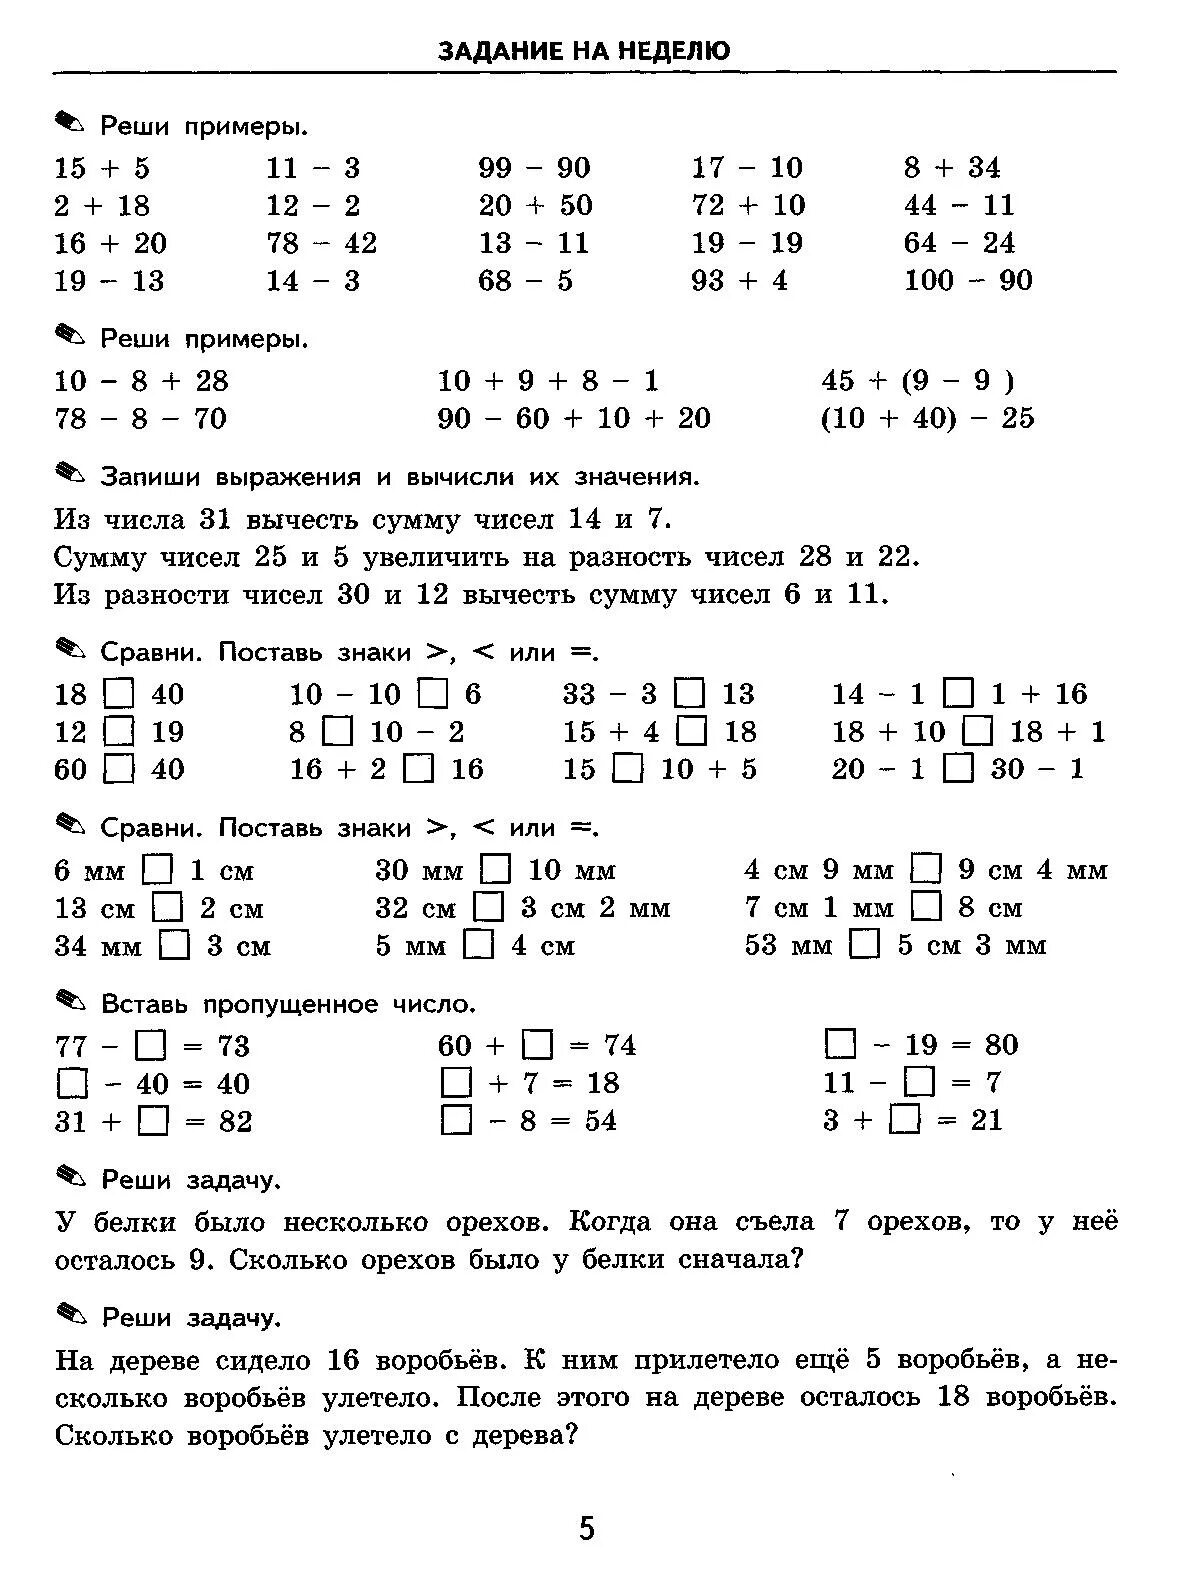 Тренировочные примеры по математике 3 ответы. Примерные задачи по математике 3 класс. Математика Моро 3 класс тренировочные задания. Задачи и примеры для 3 класса по математике. Решение примеров и задач 2 класс 1 четверть.